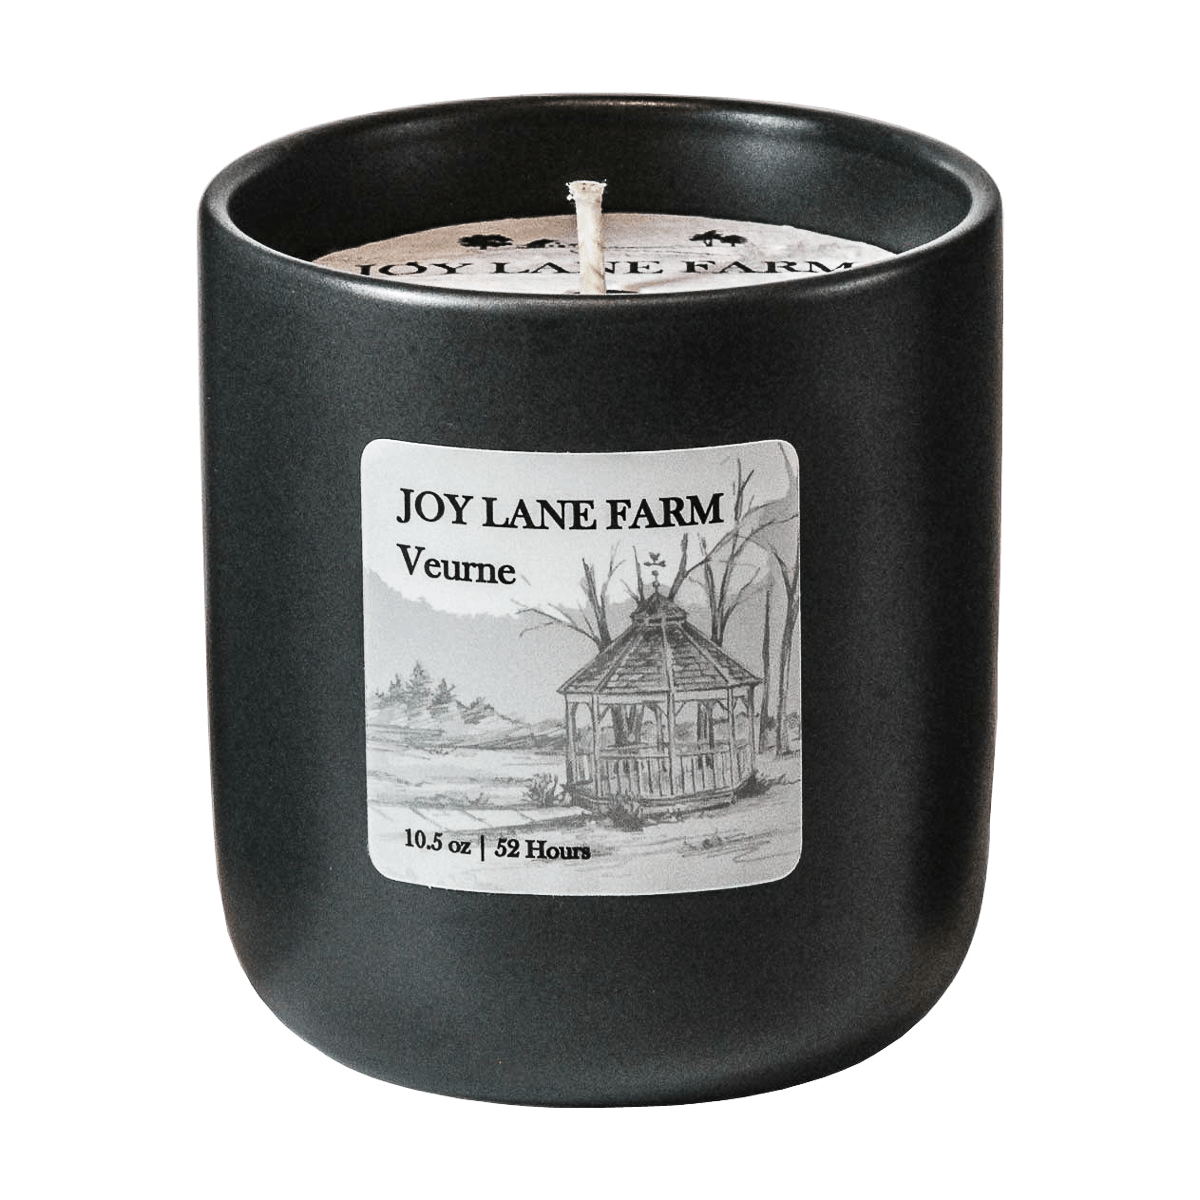 Veurne Ceramic Candle